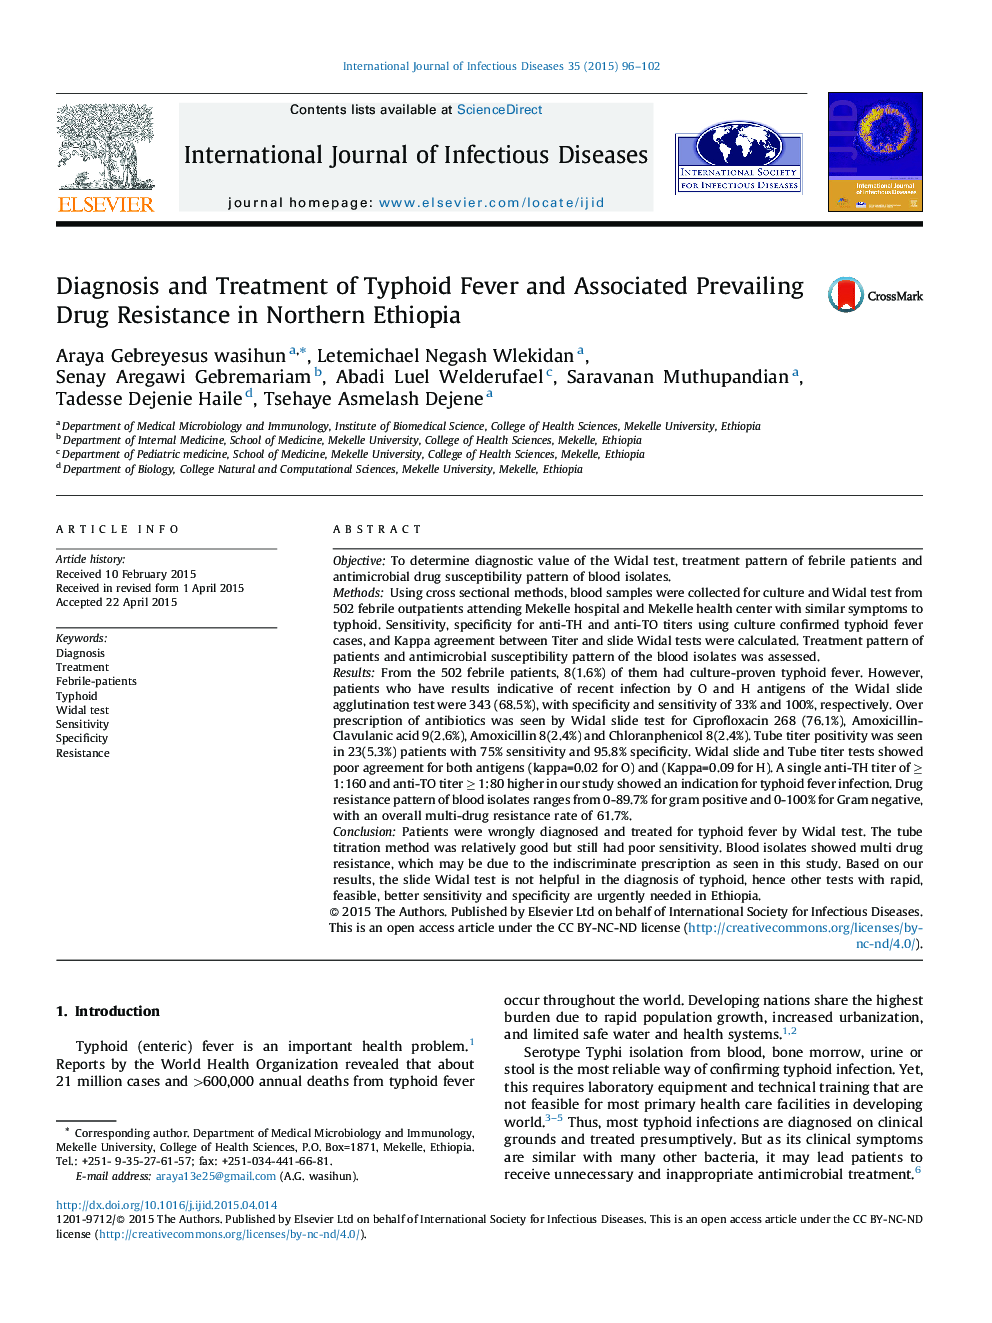 تشخیص و درمان تب شیوع و مقاومت به مواد مخدر غالب در اتیوپی شمالی 